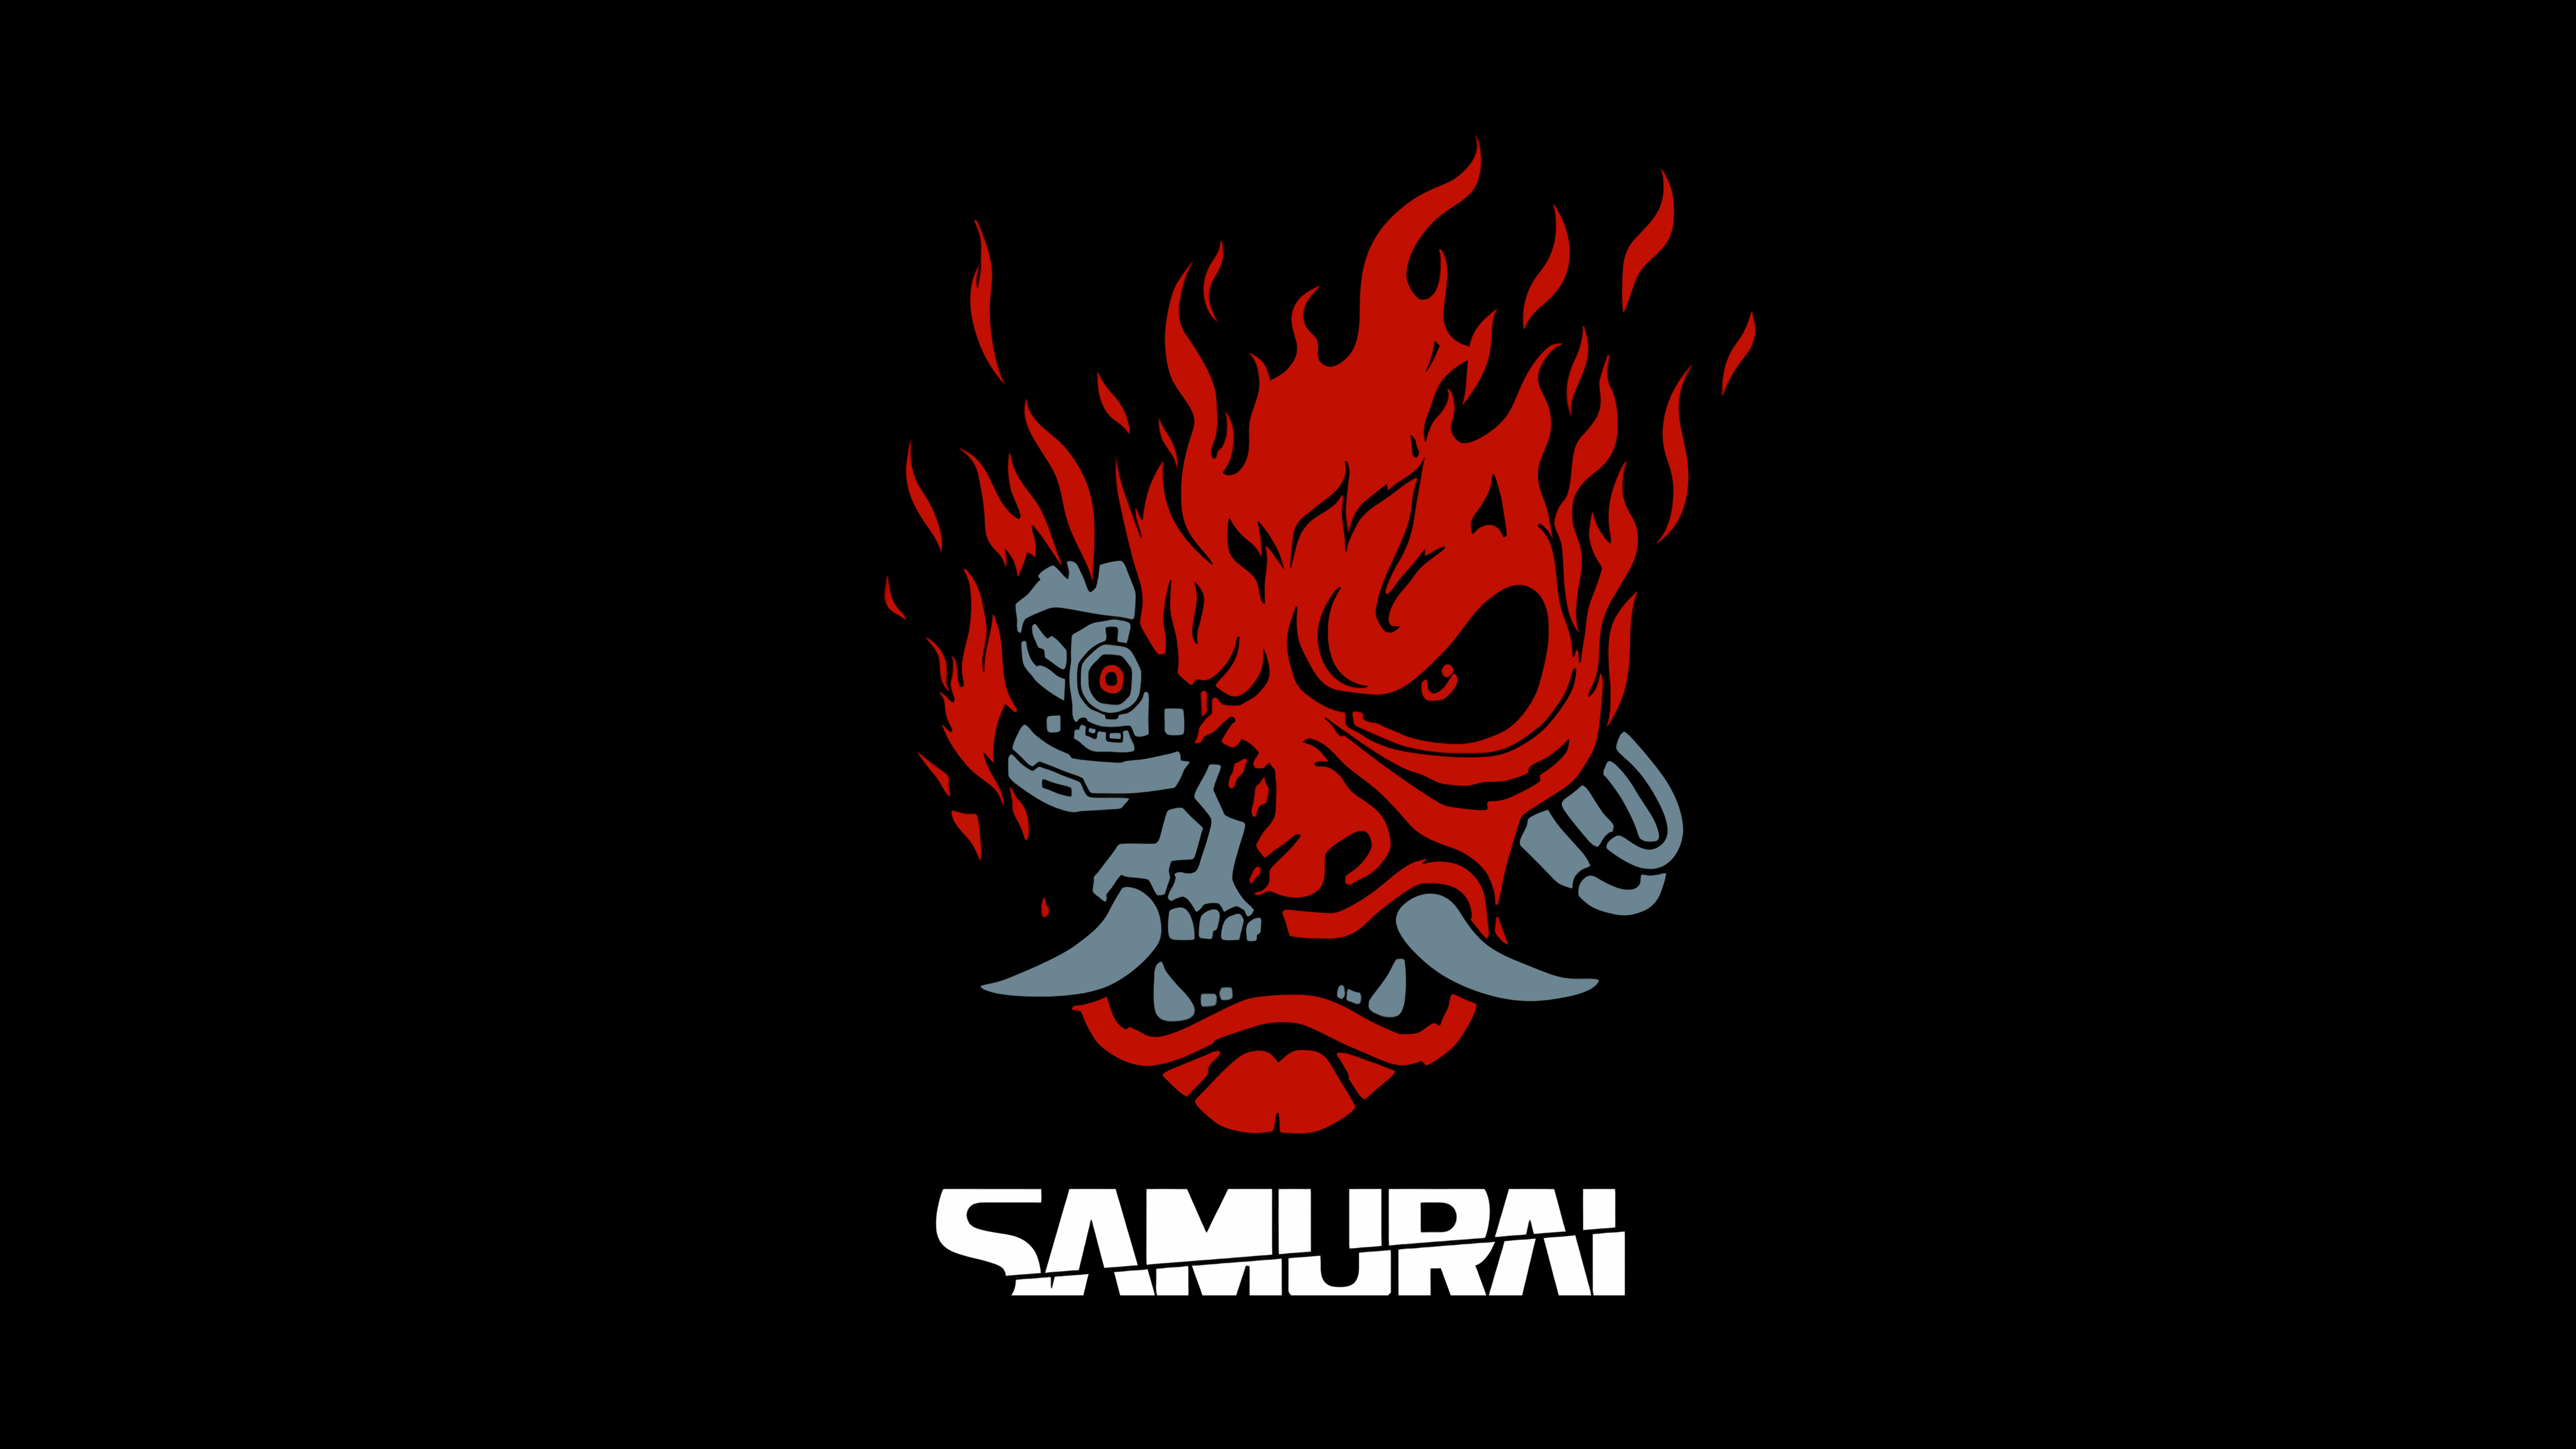 General 7680x4320 Cyberpunk 2077 Samurai (Cyberpunk 2077) video game art logo video games